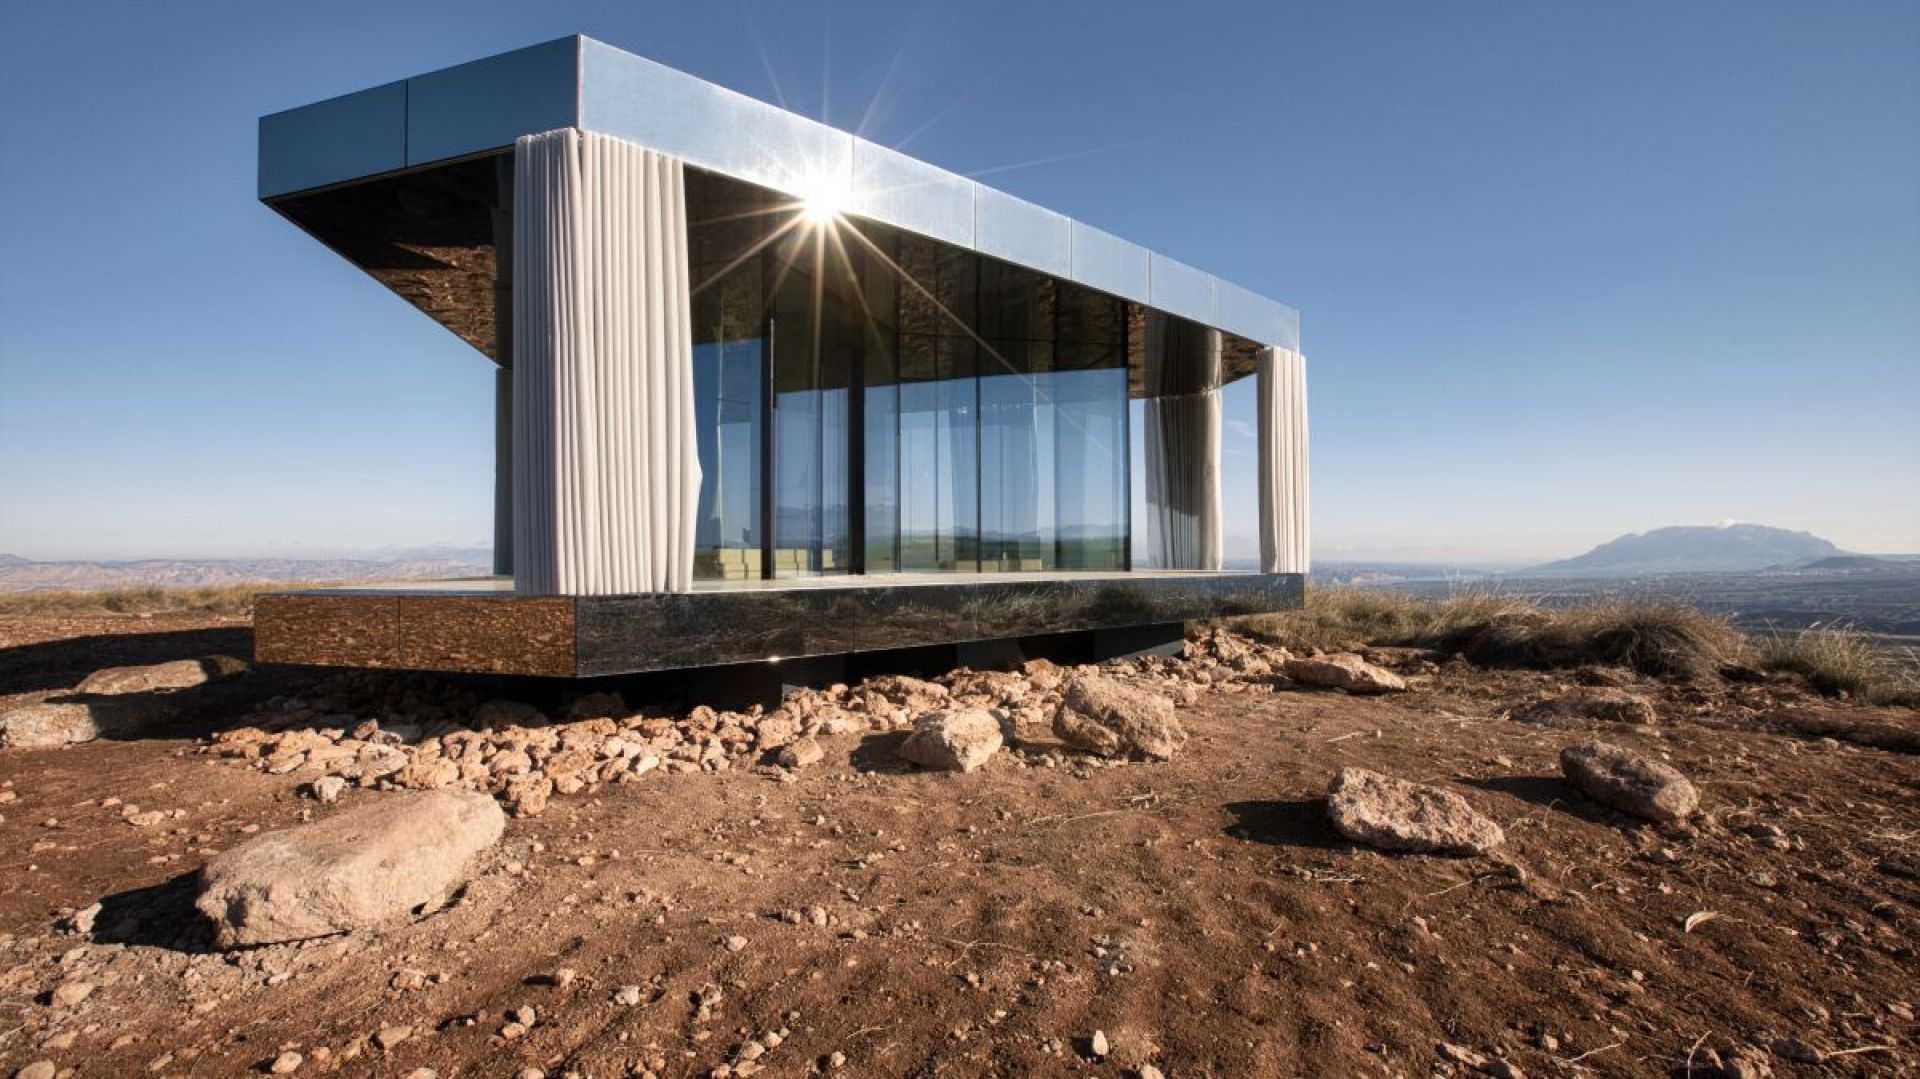 Dom na pustyni - 20 m kw. szklanej architektury